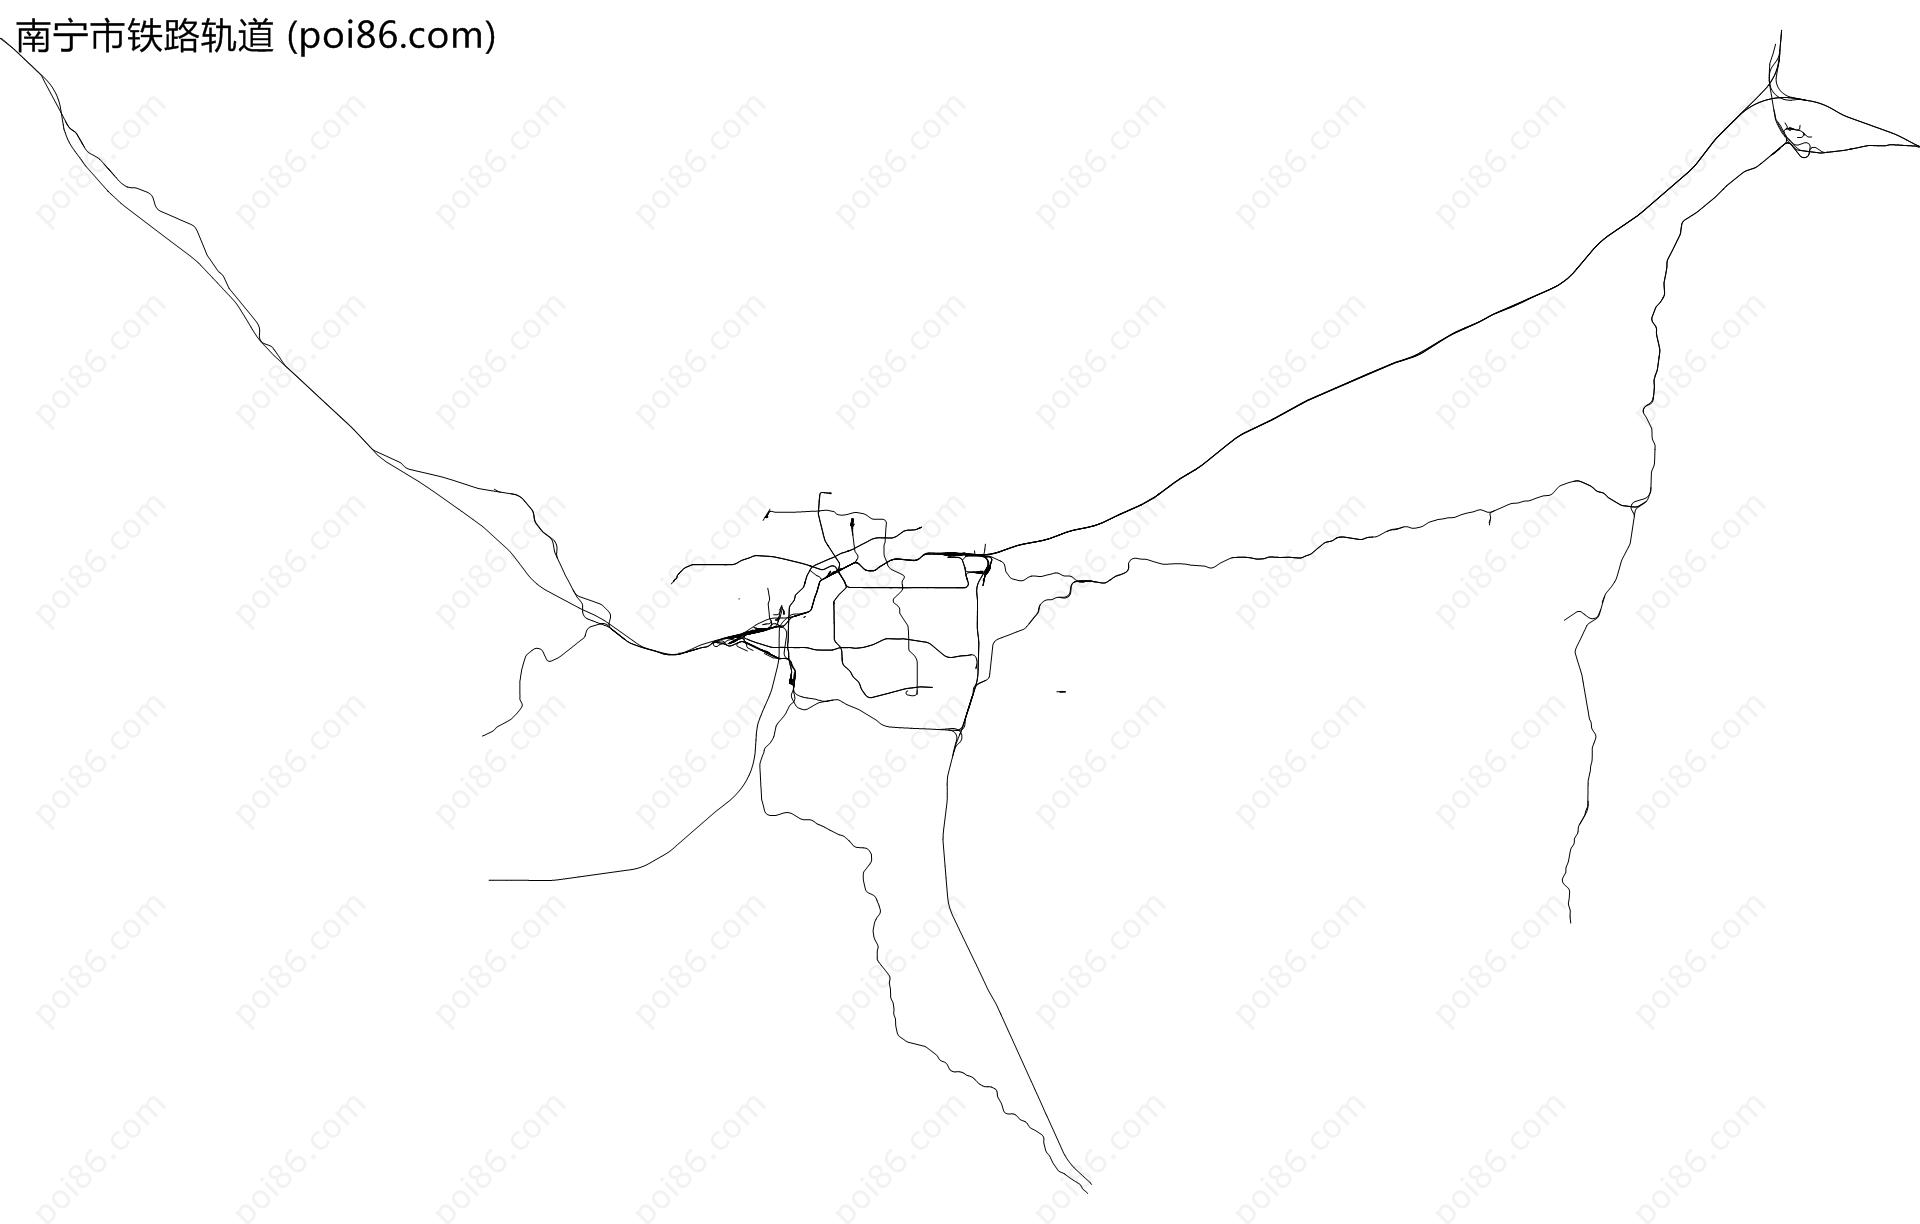 南宁市铁路轨道地图